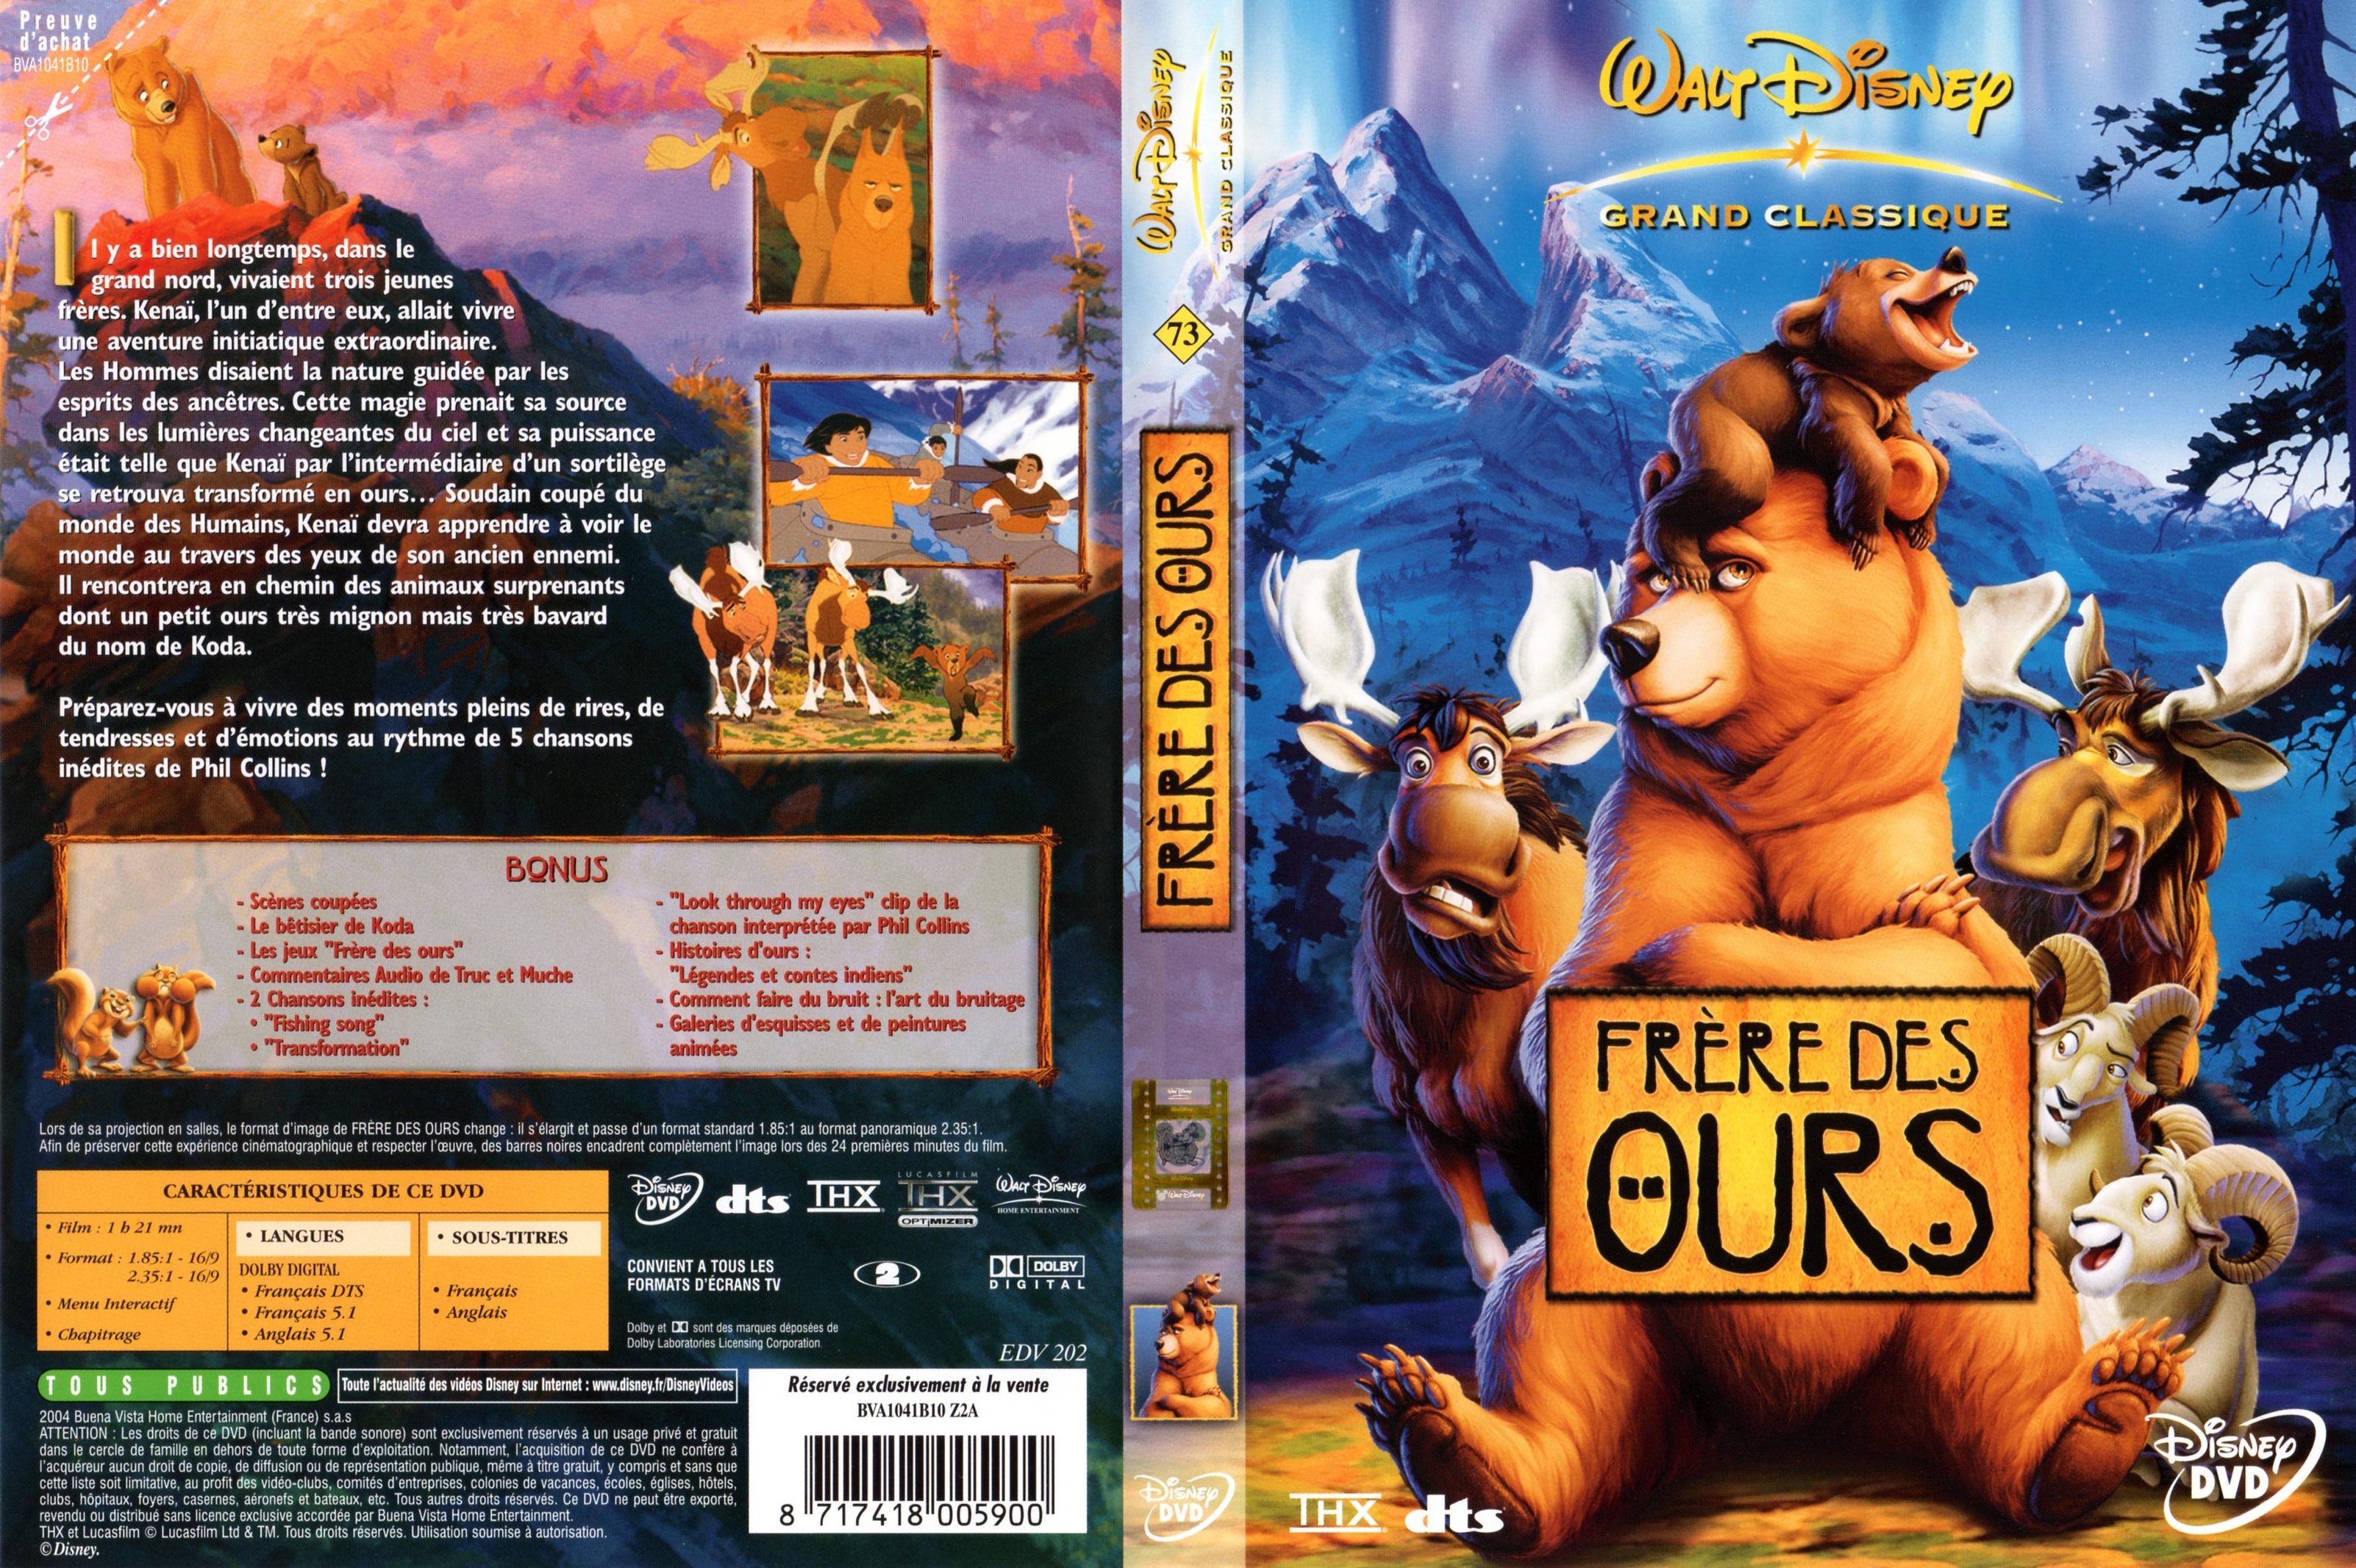 Jaquette DVD Frre des ours v3